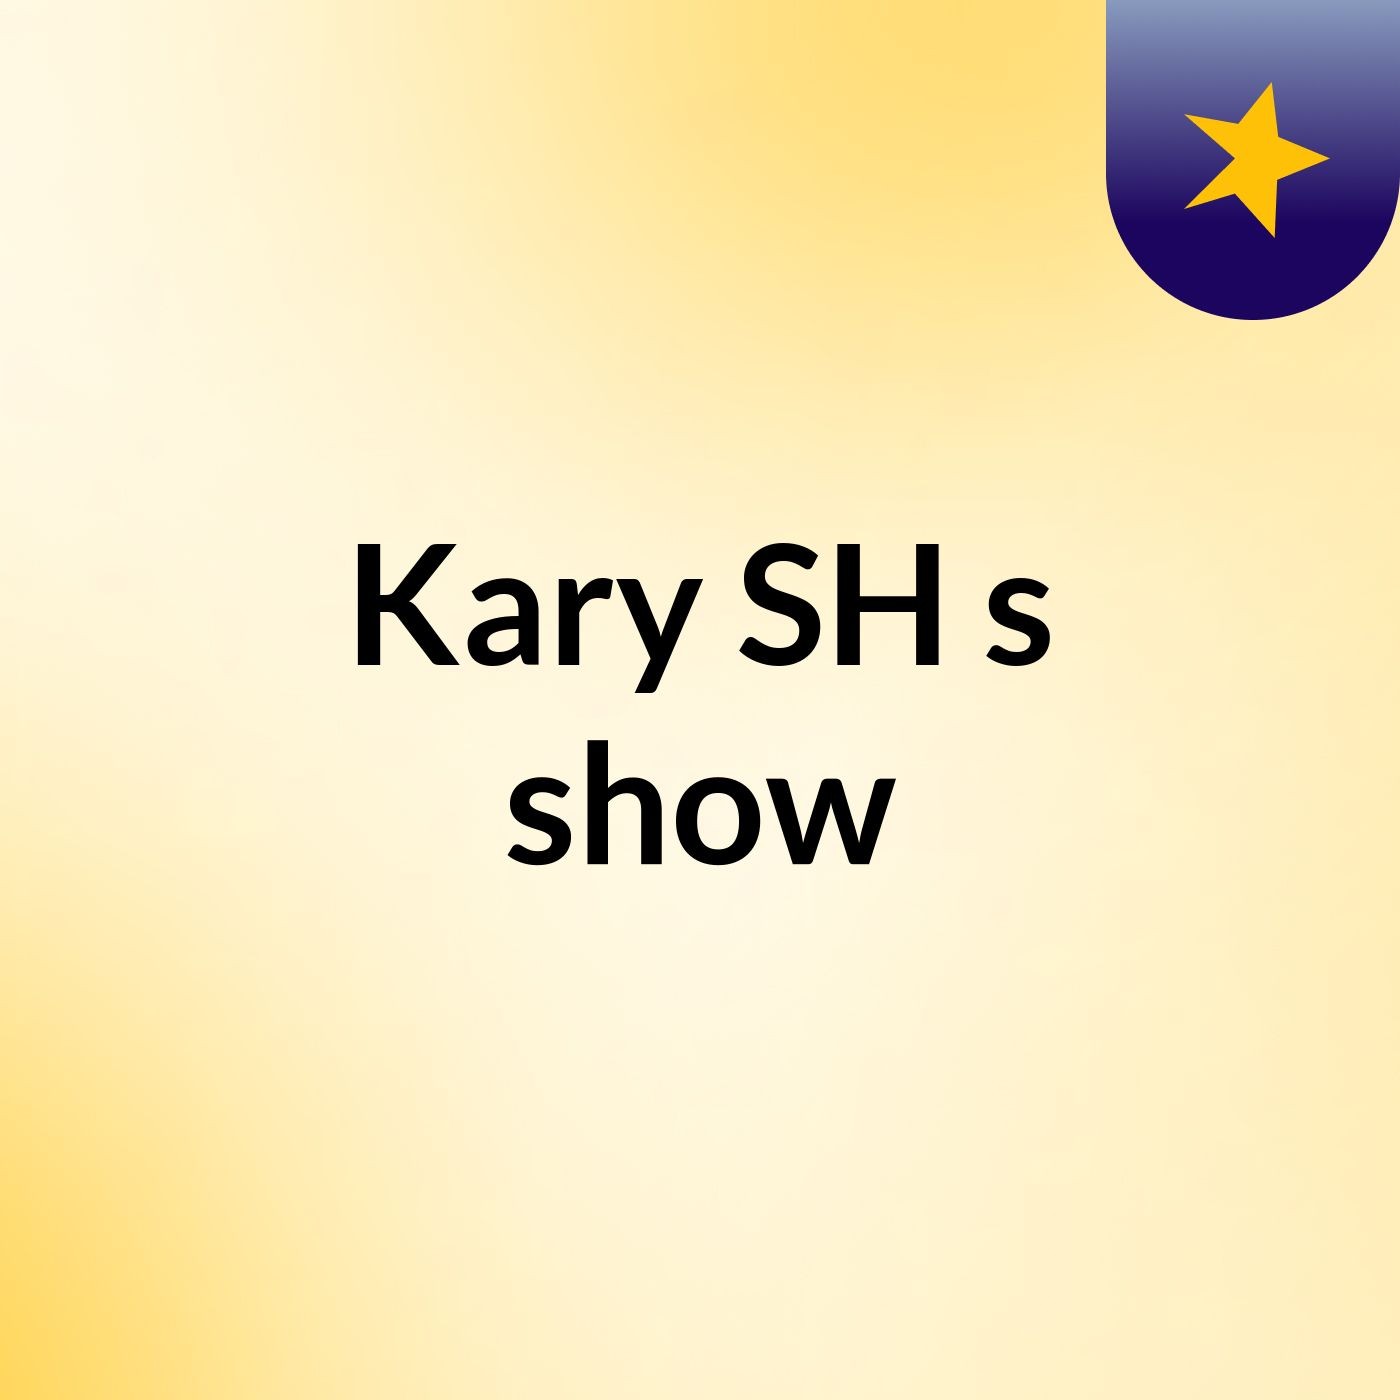 Kary SH's show